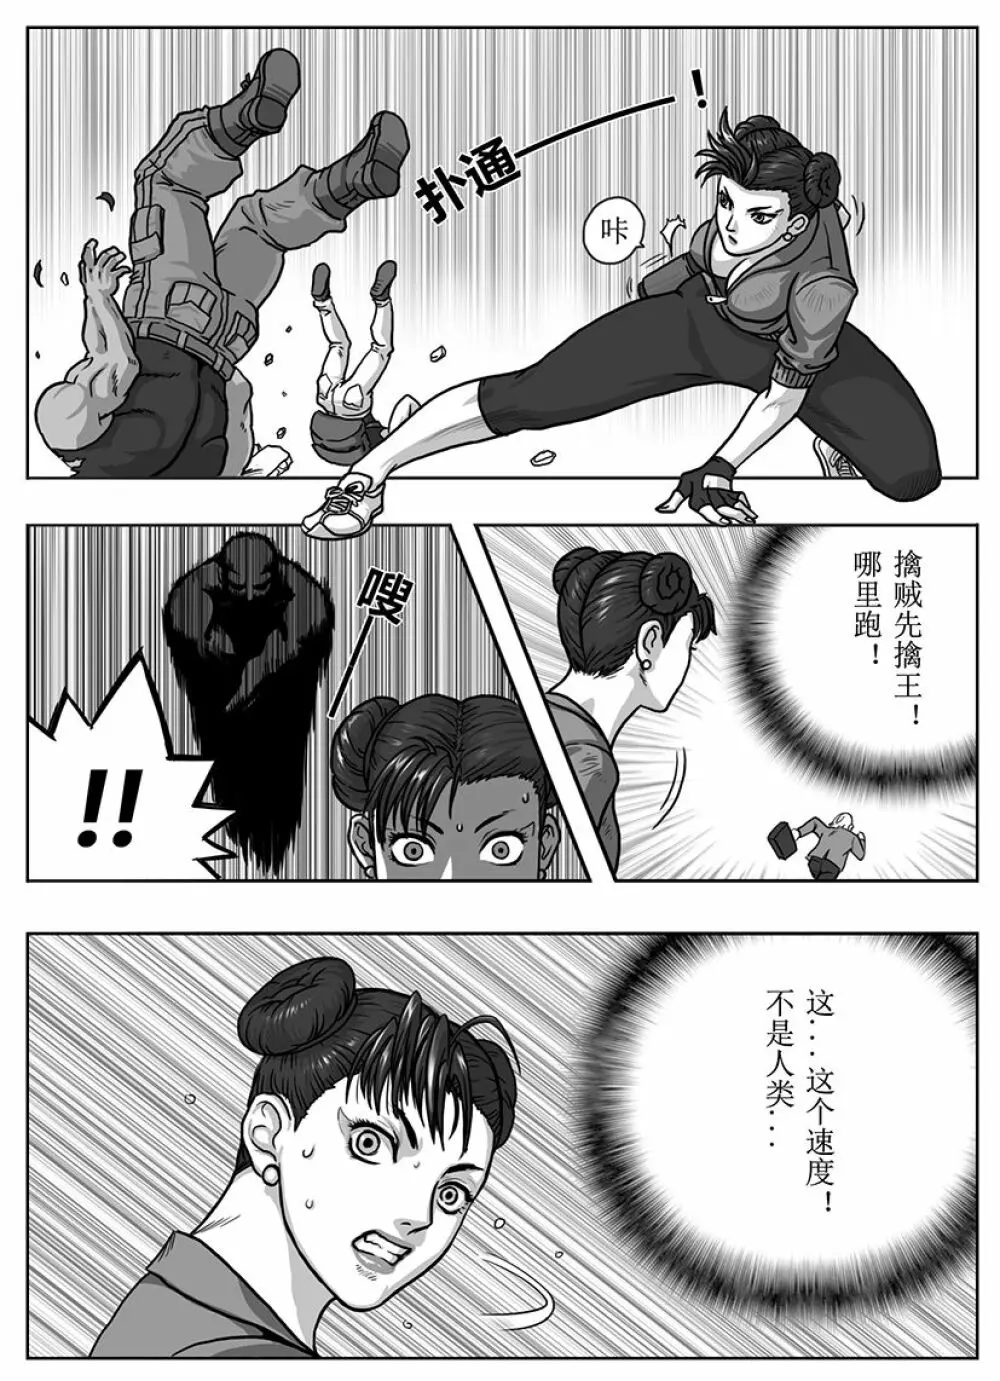 Street Fighter: Legend of Chun-Li - page14